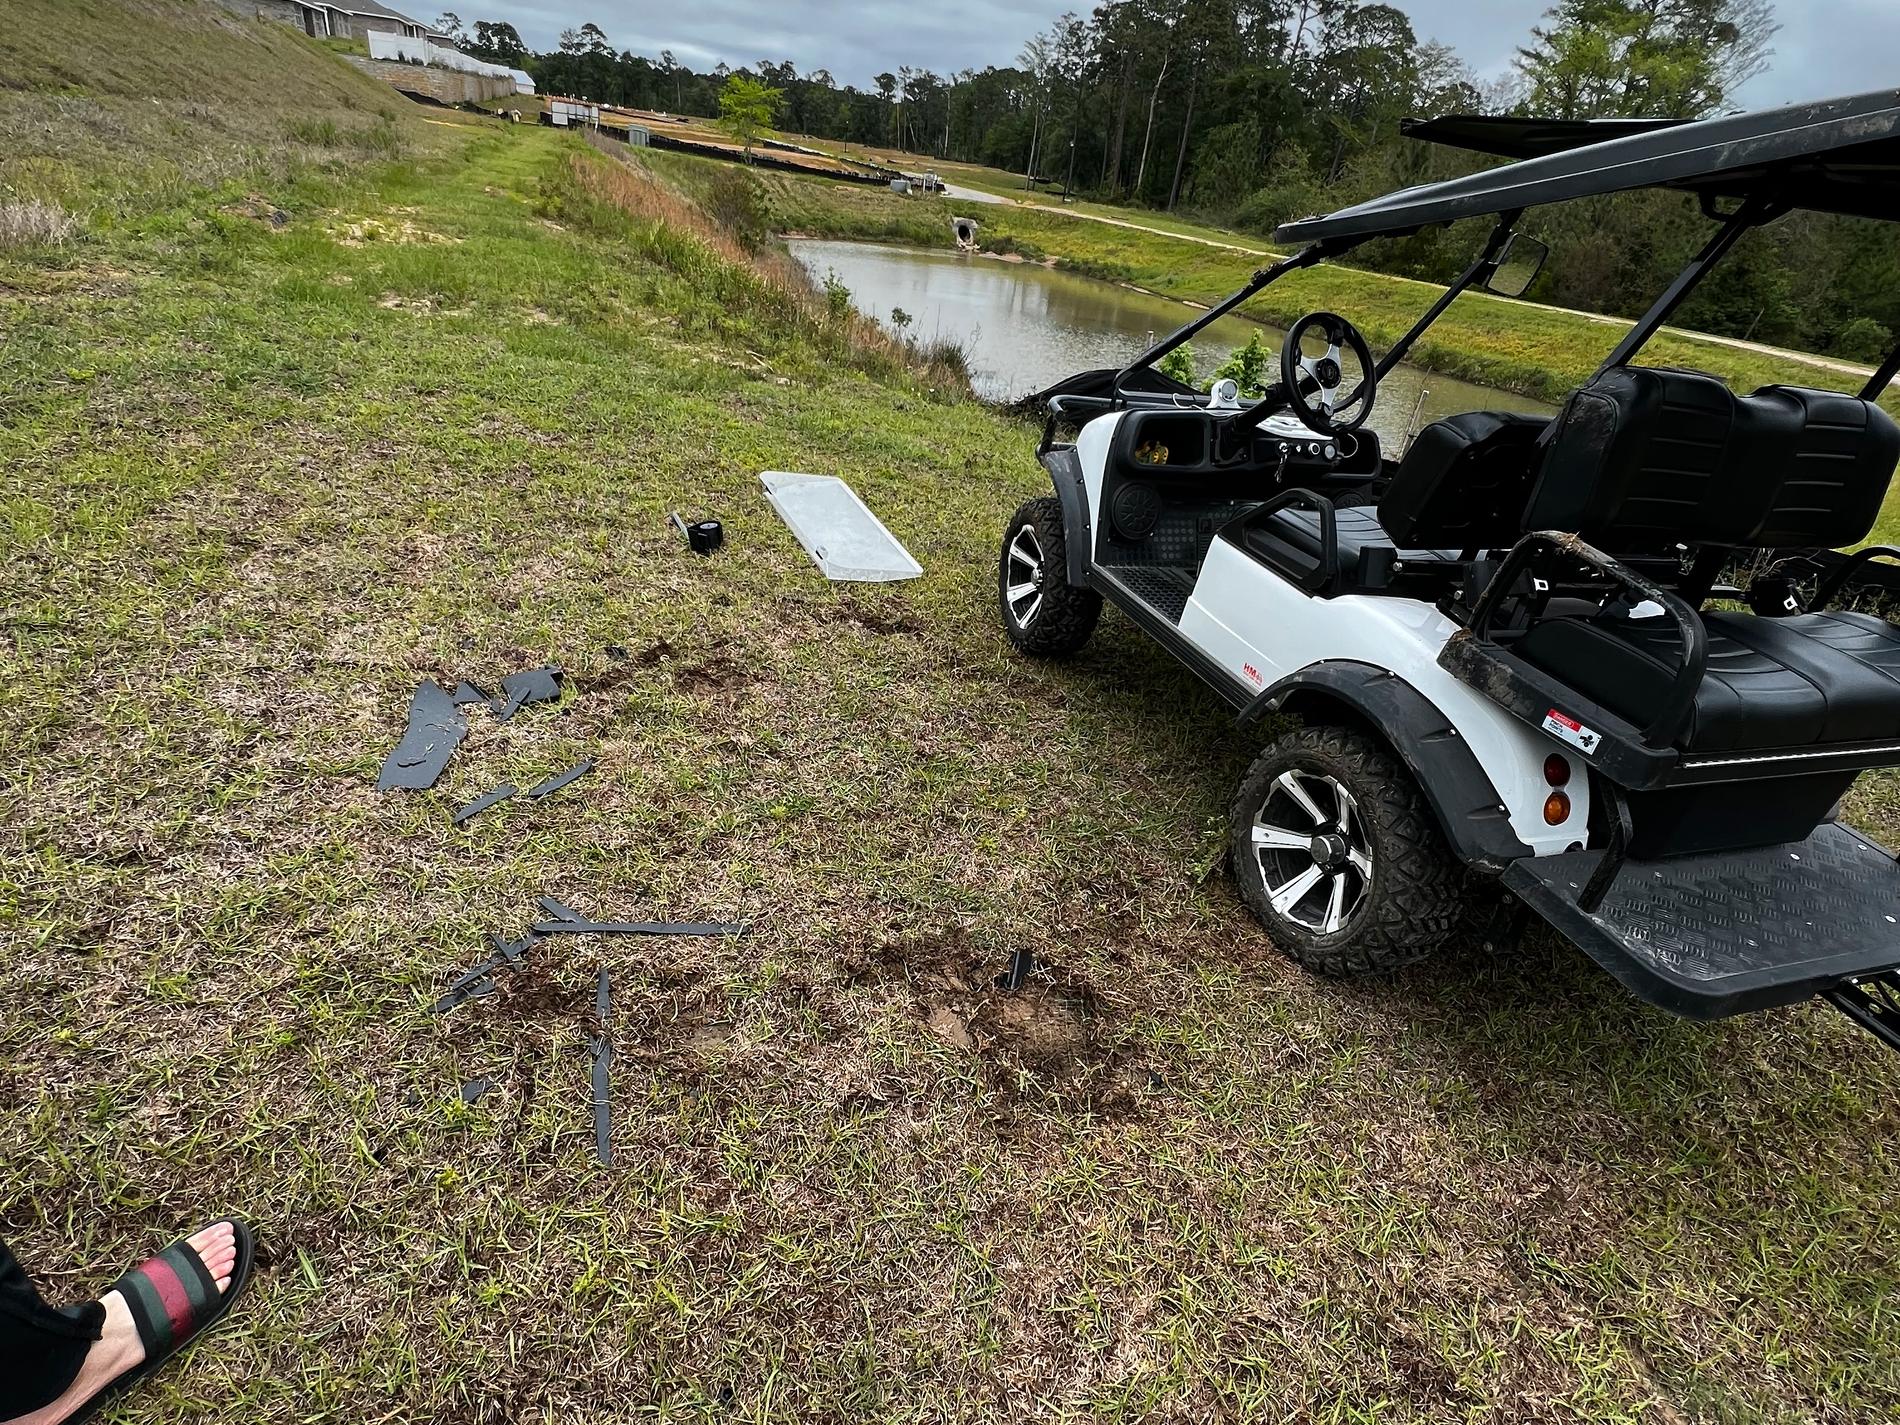 Rester av golfbil på marken efter kraschen.